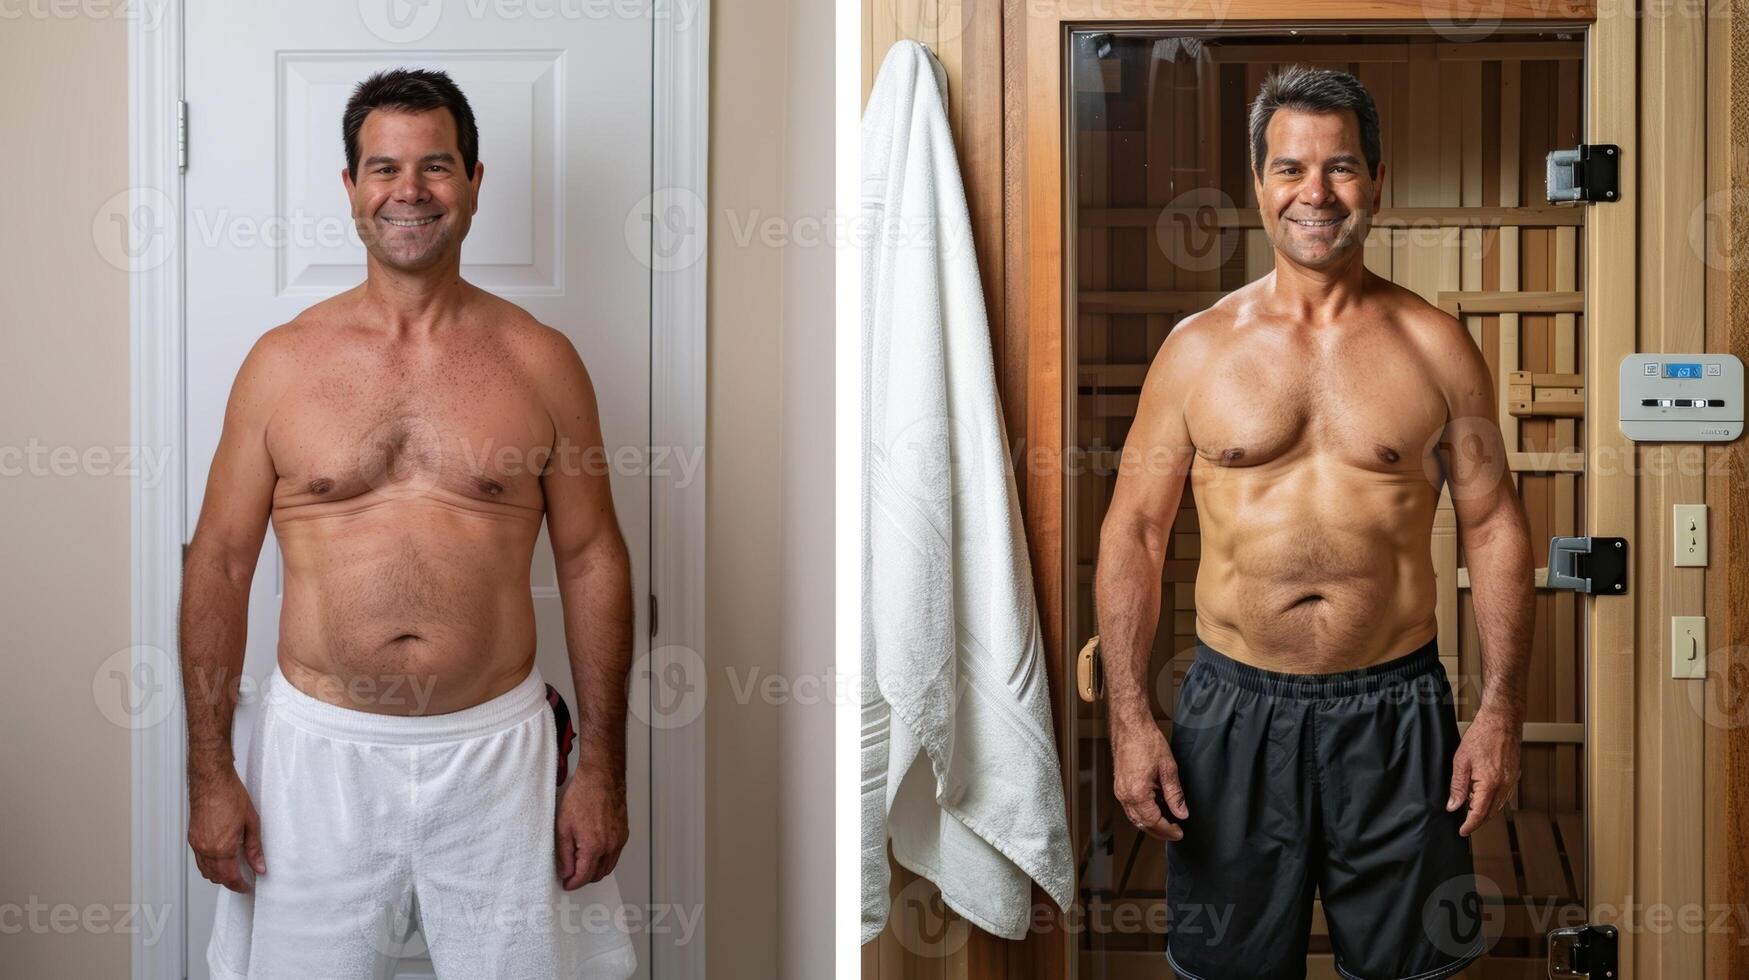 en innan och efter Foto av en välkänd komiker visa upp deras vikt förlust resa och kredite infraröd bastur som en nyckel faktor.